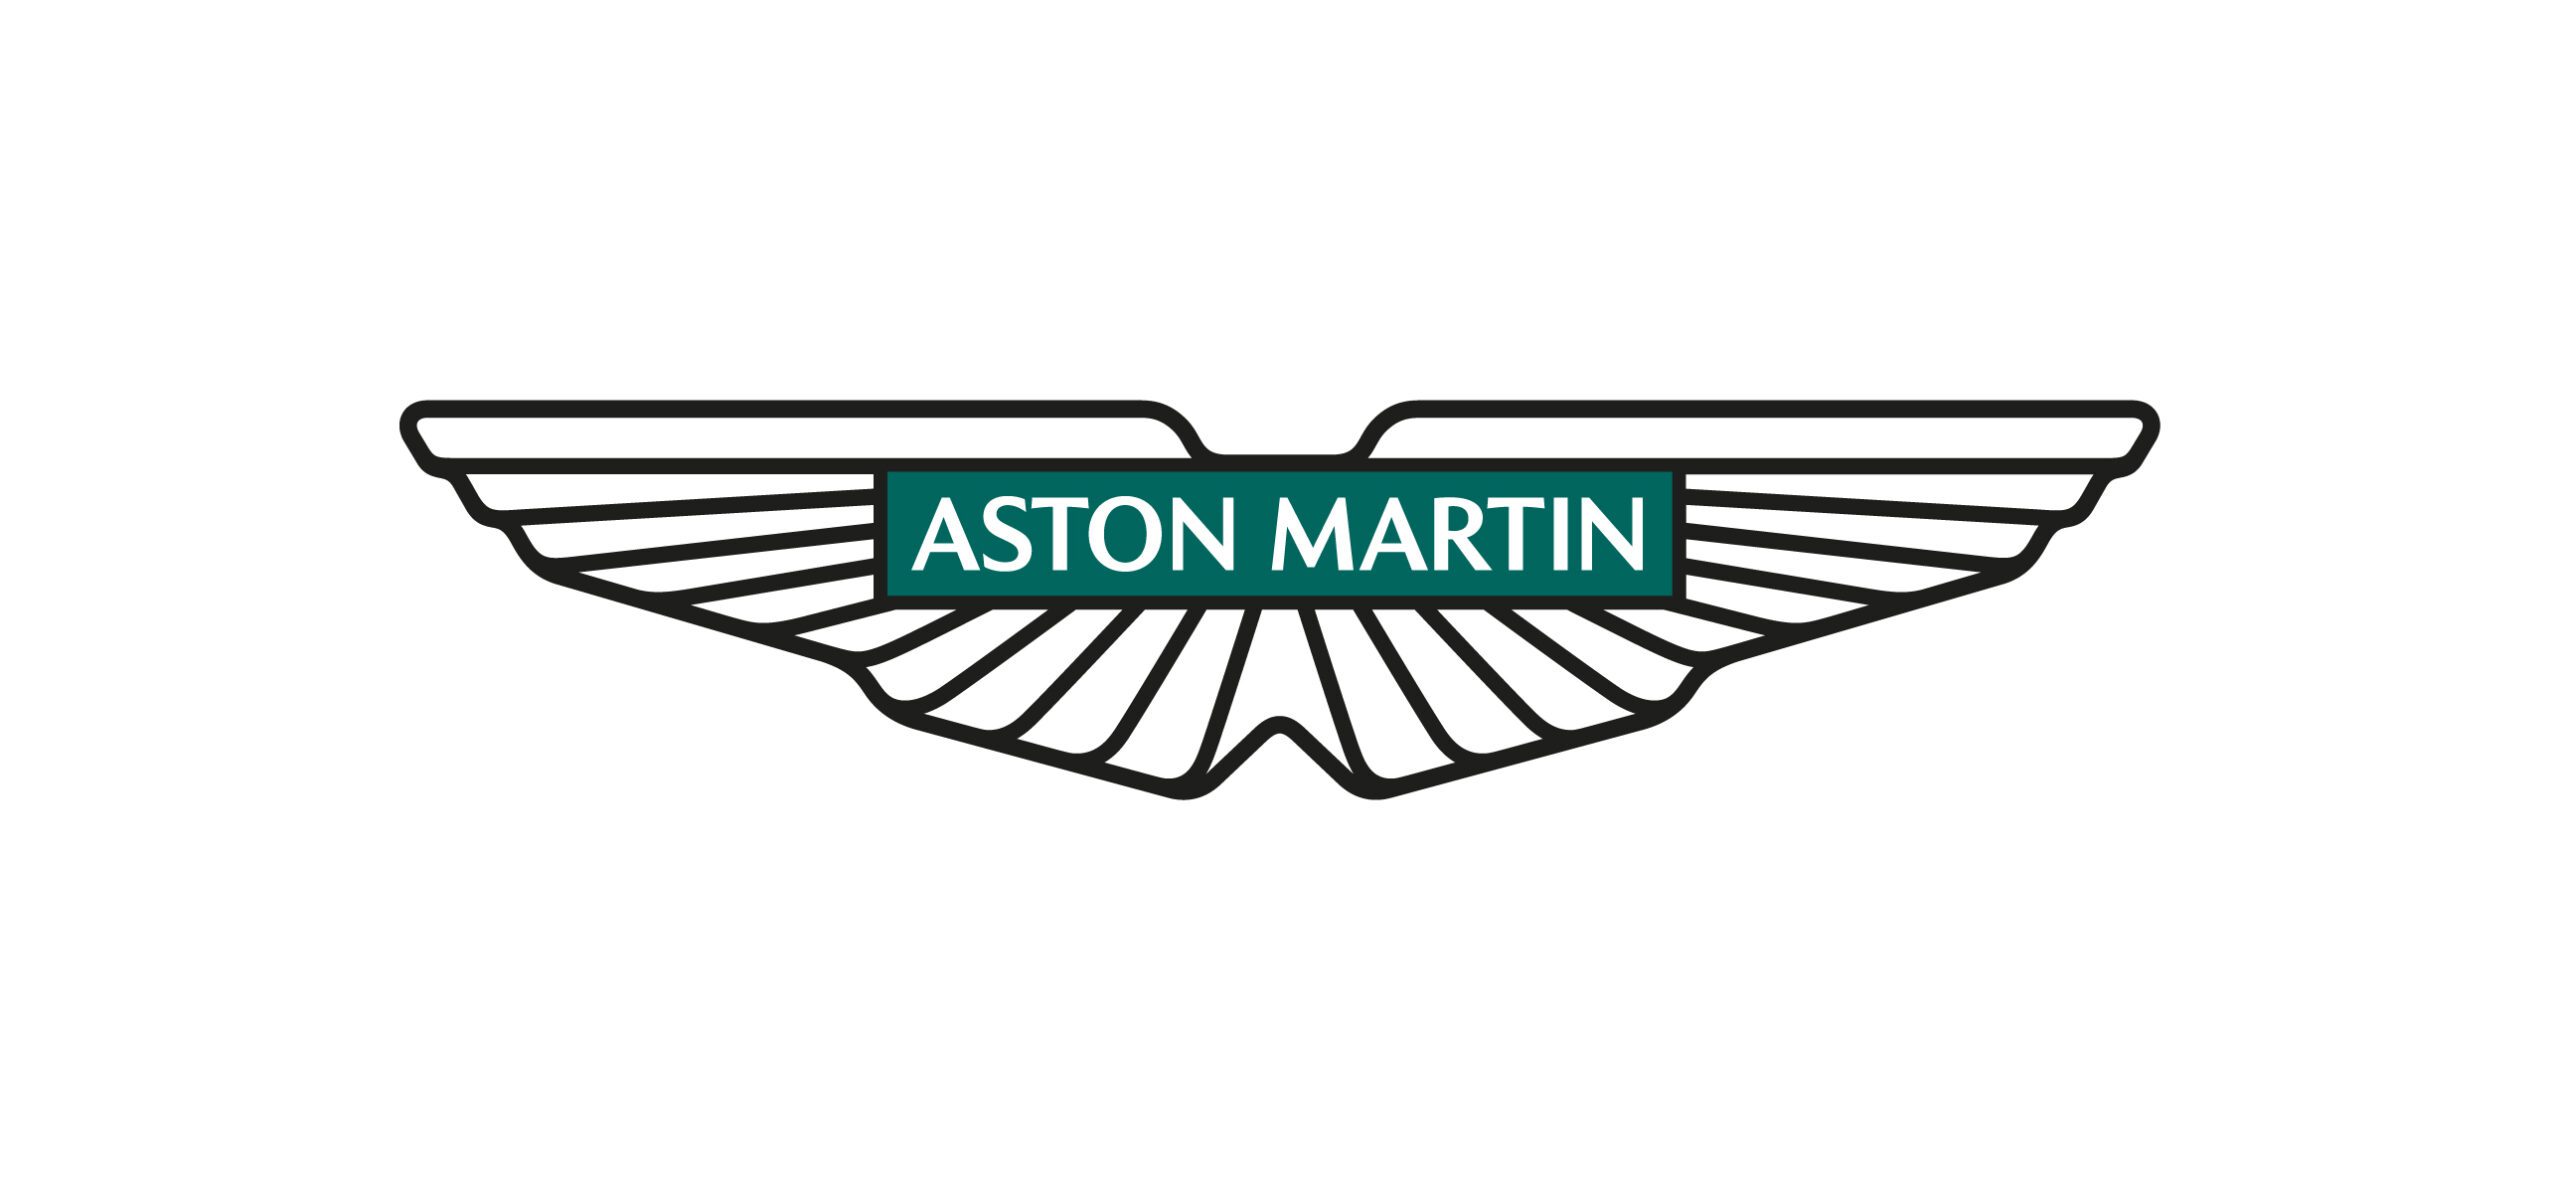 Aston Martin's new logo